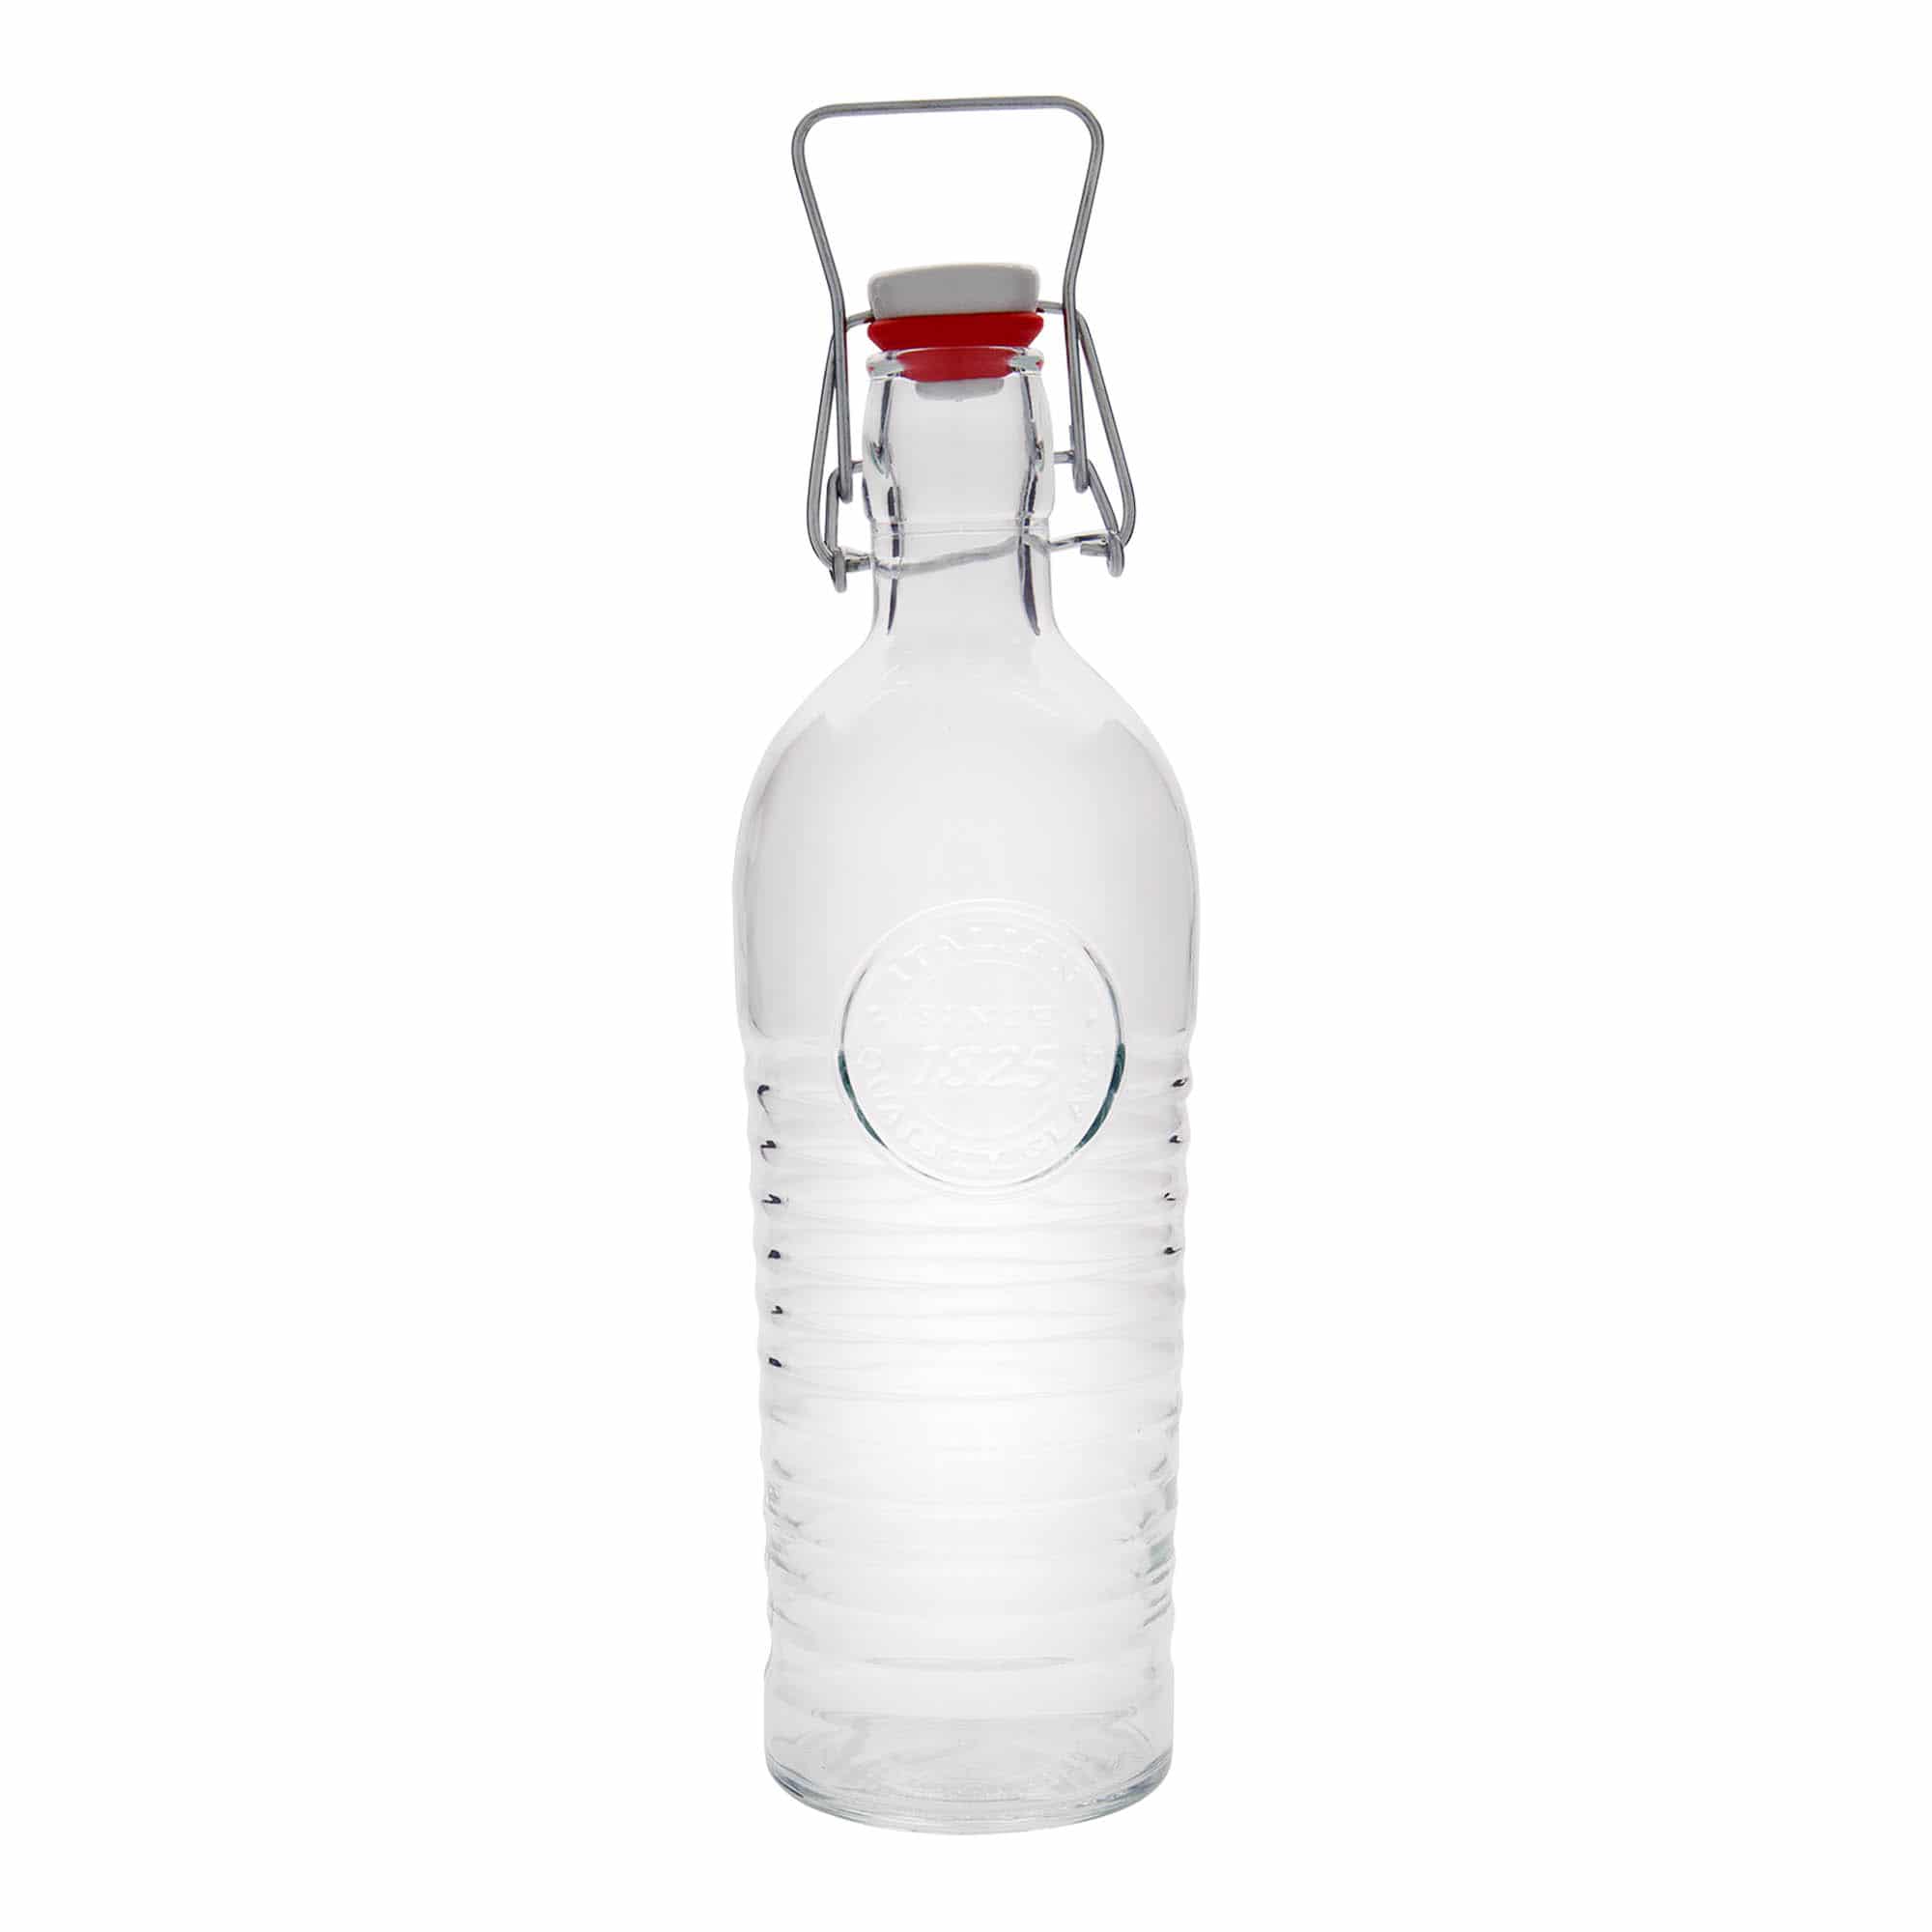 1.200 ml glasflaske 'Officina 1825', åbning: Patentlåg